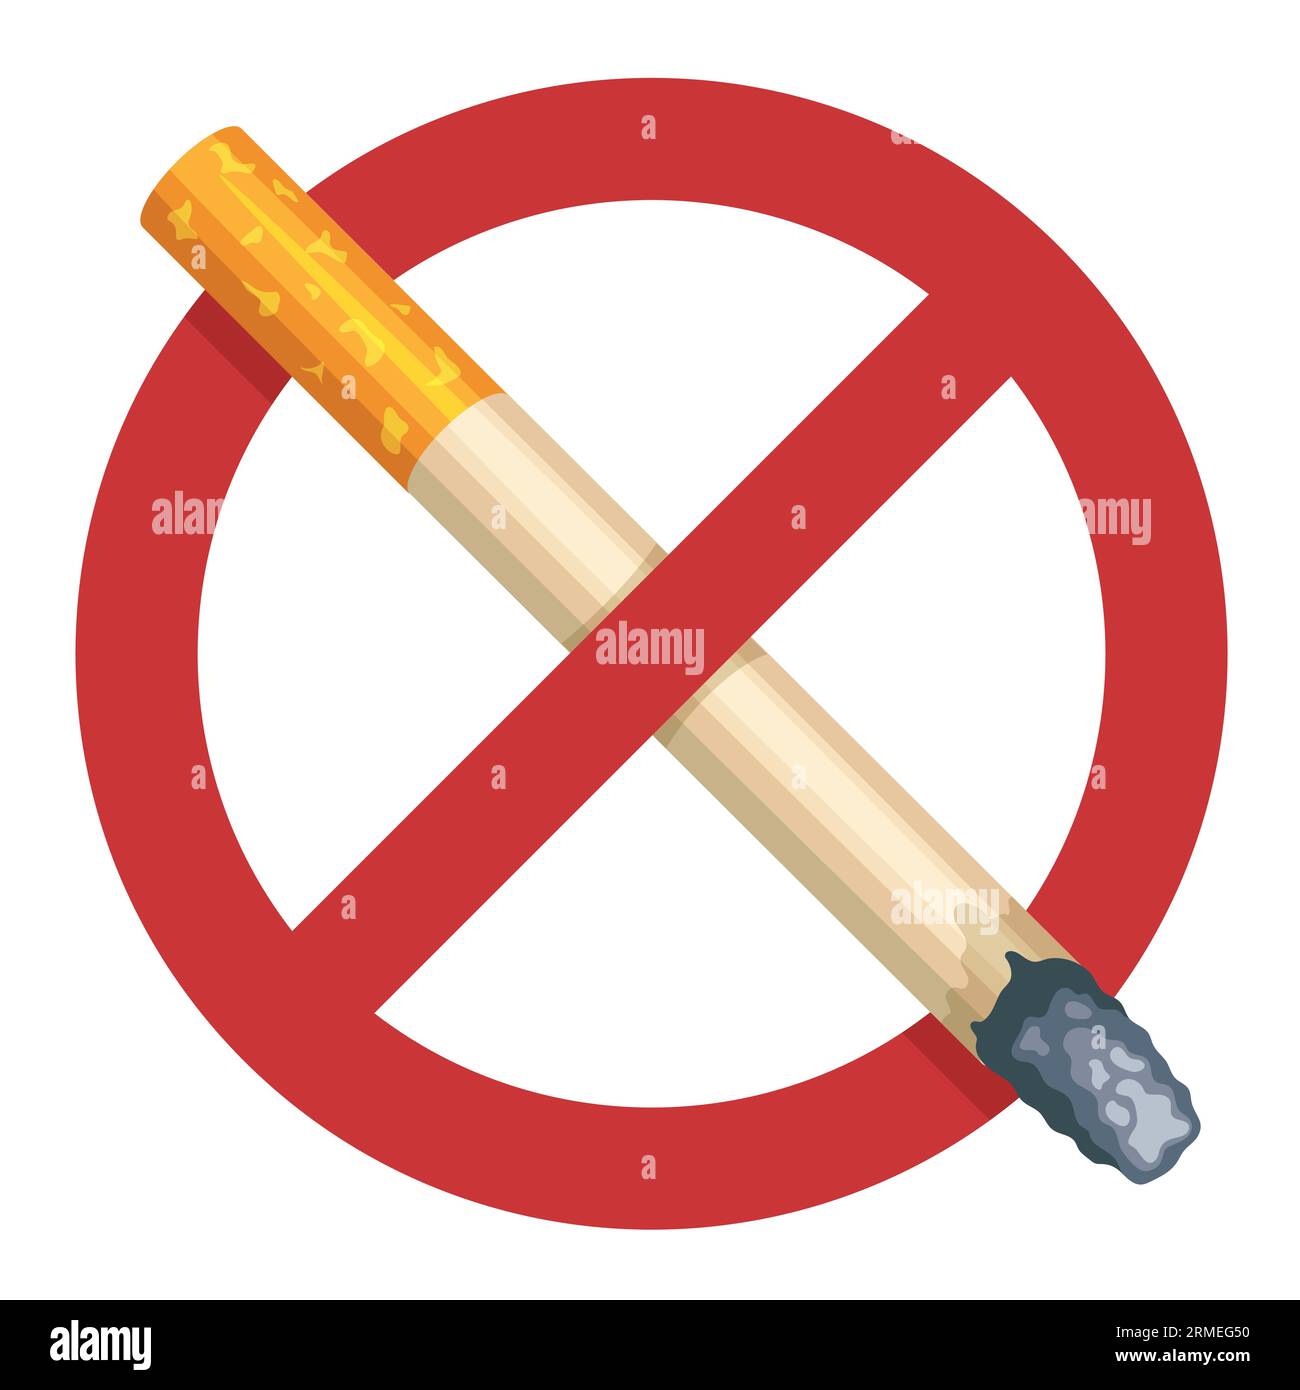 Rauchverbotsschild. Warnpiktogramm für Rauchverbot, Zigarette mit Rauch und giftigen Dämpfen, flaches Rauchverbot und Symbole für Rauchsucht. Vektor Stock Vektor